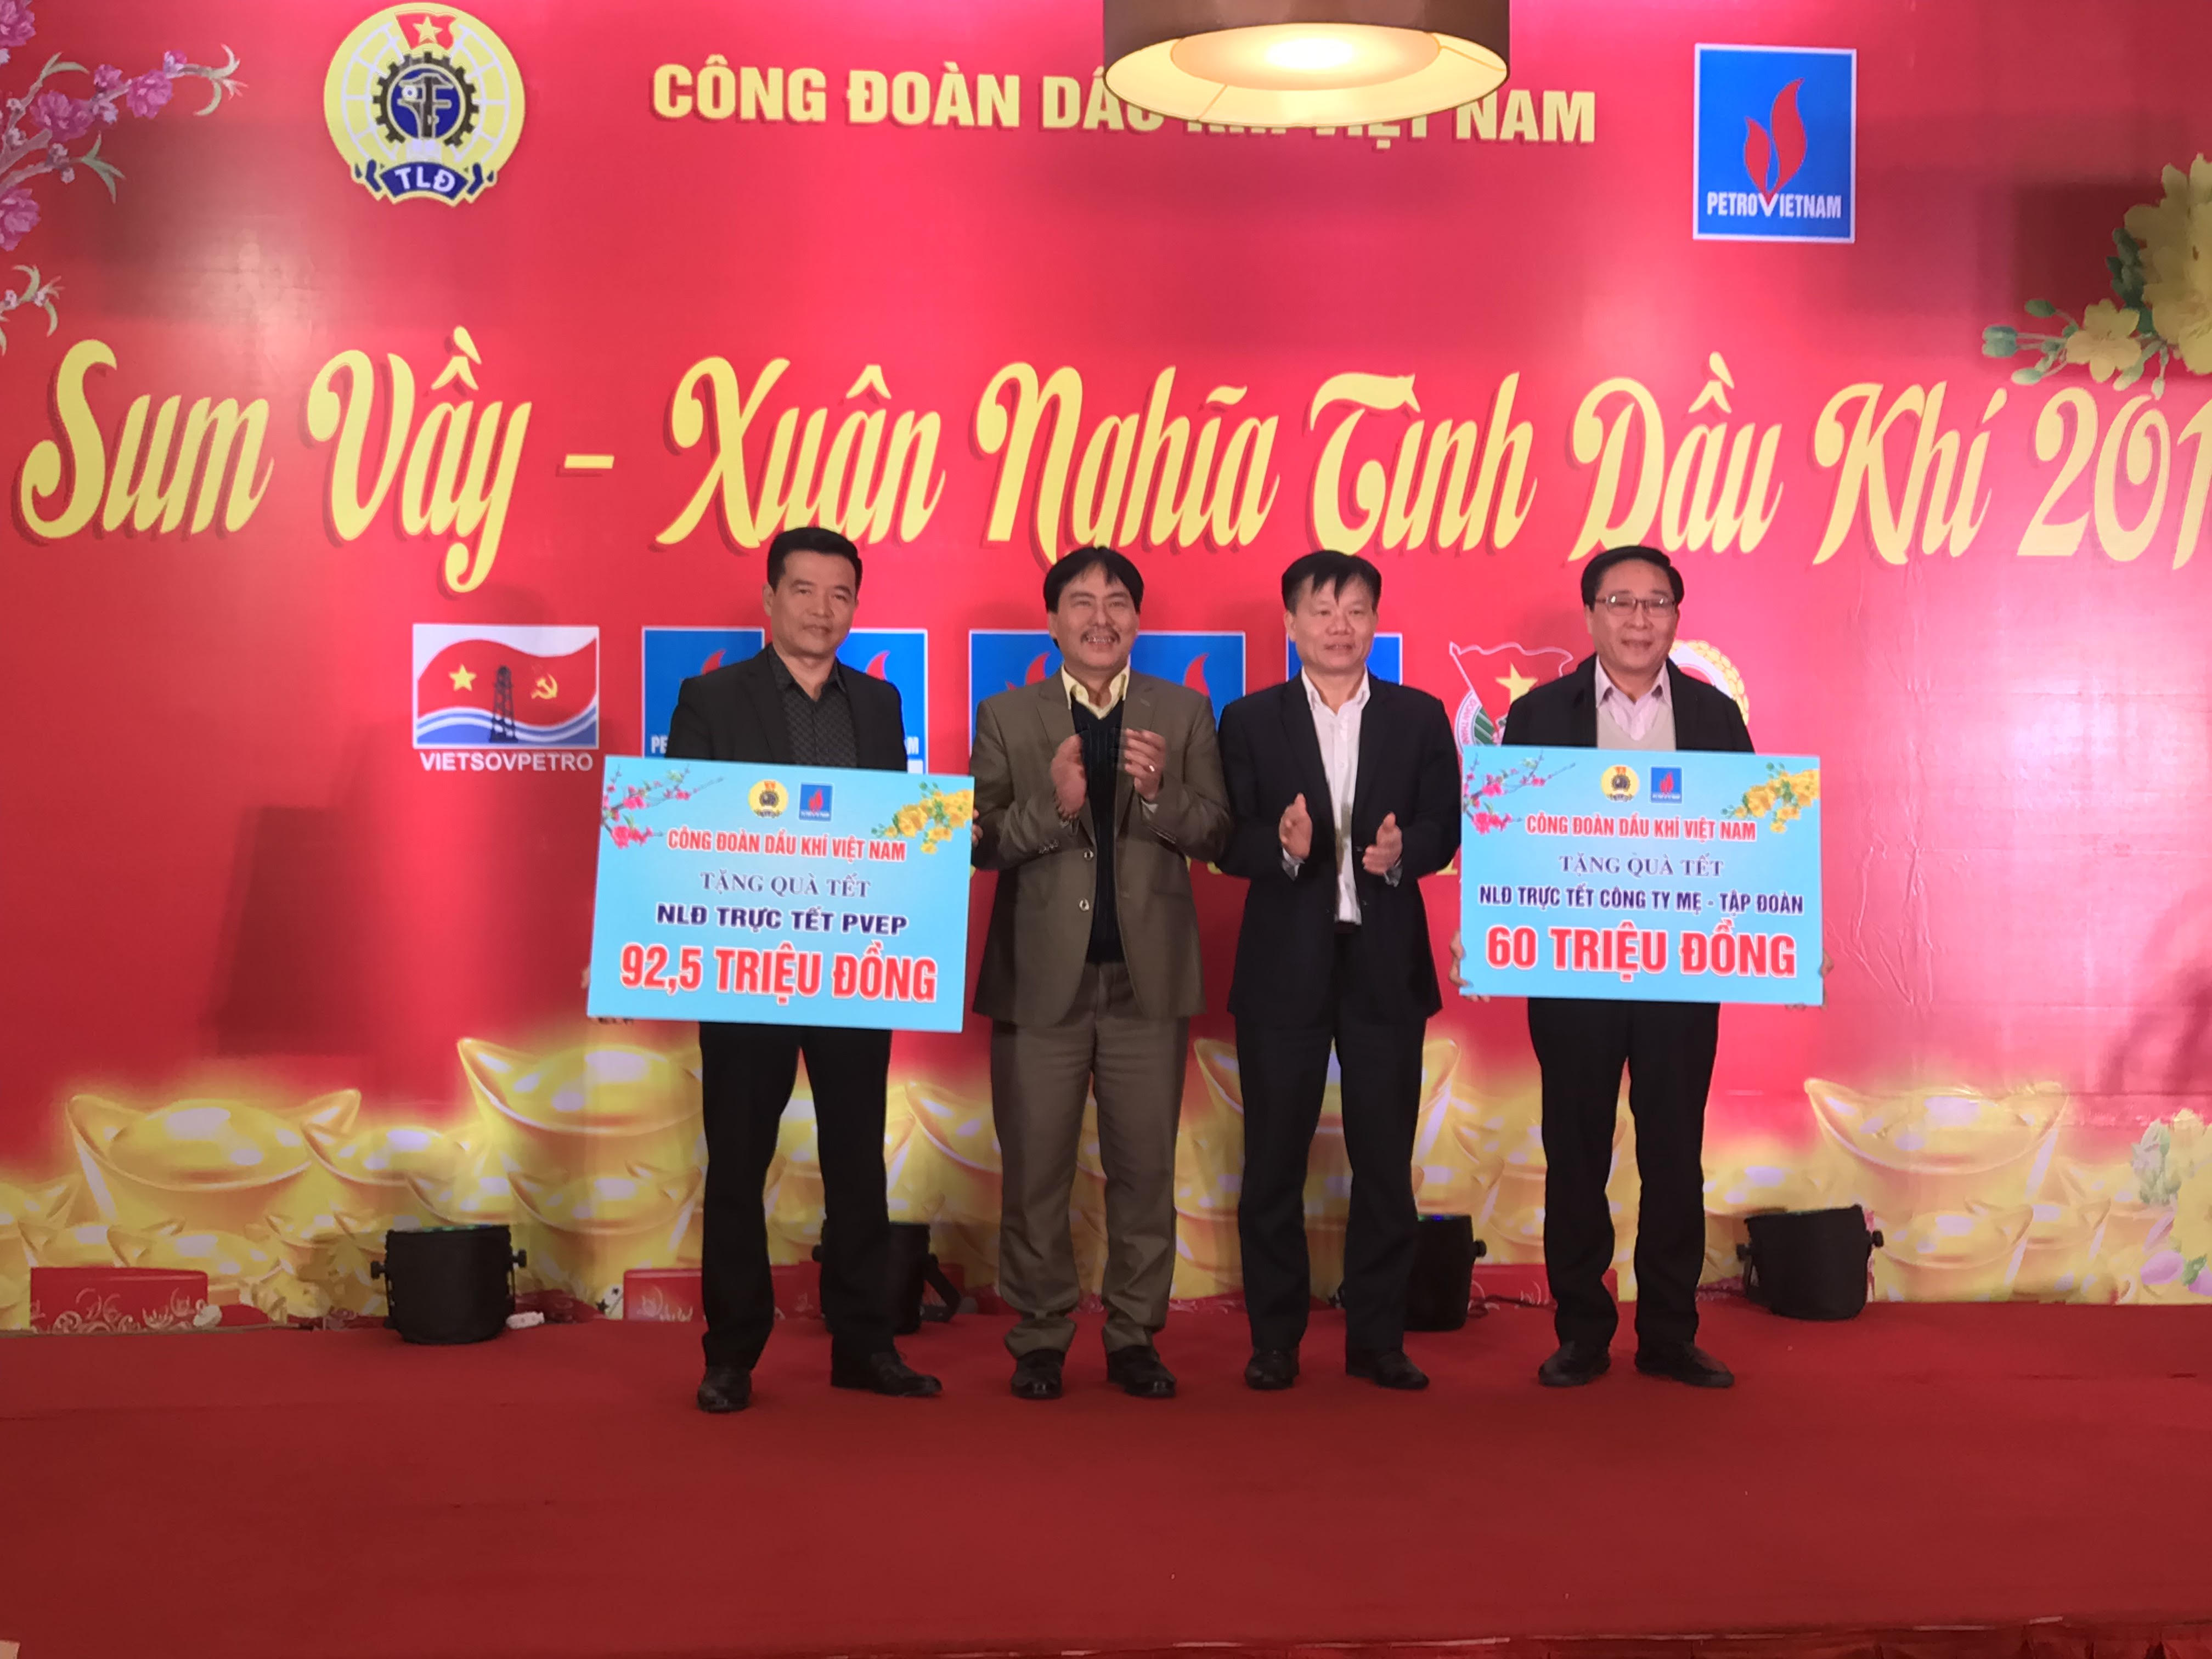 Công đoàn dầu khí Việt Nam tổ chức 